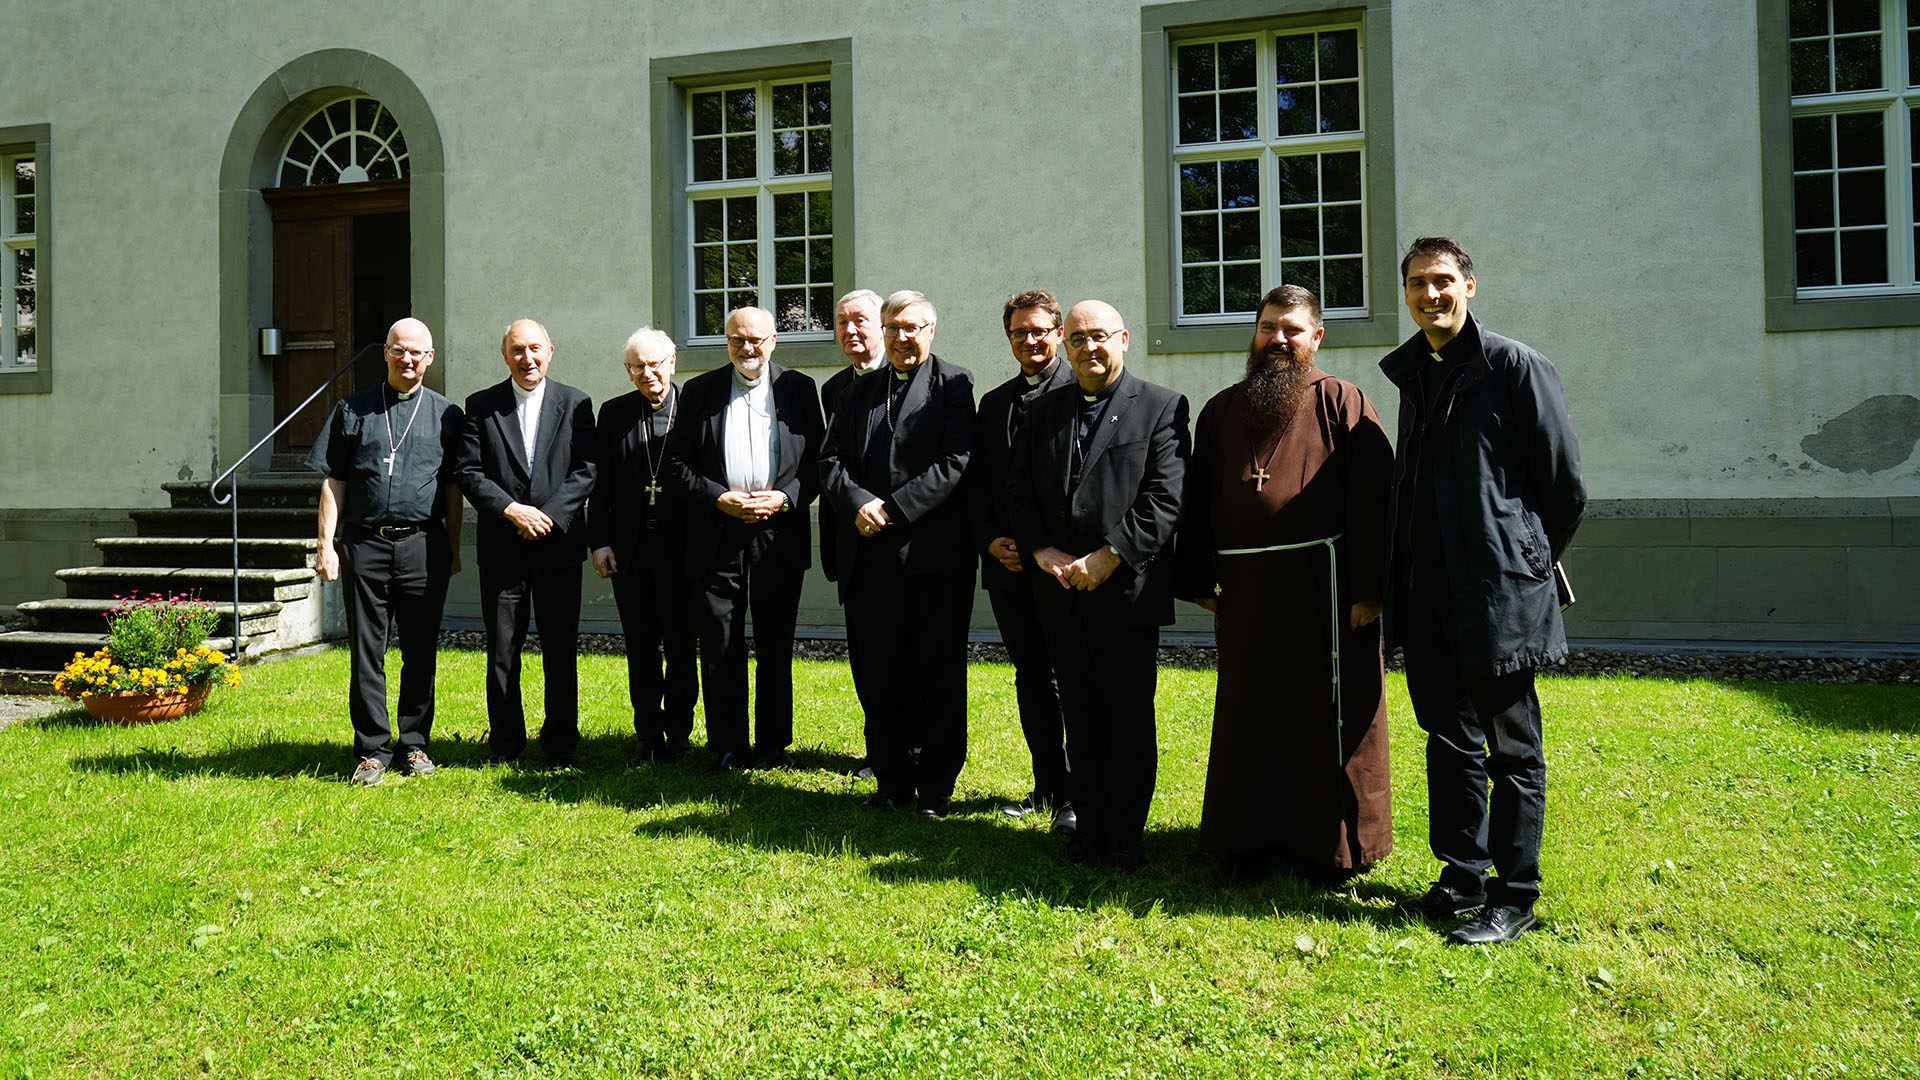 Les évêques suisses et de Scandinavie se sont retrouvés à Einsiedeln (SZ). | © Georges Scherrer